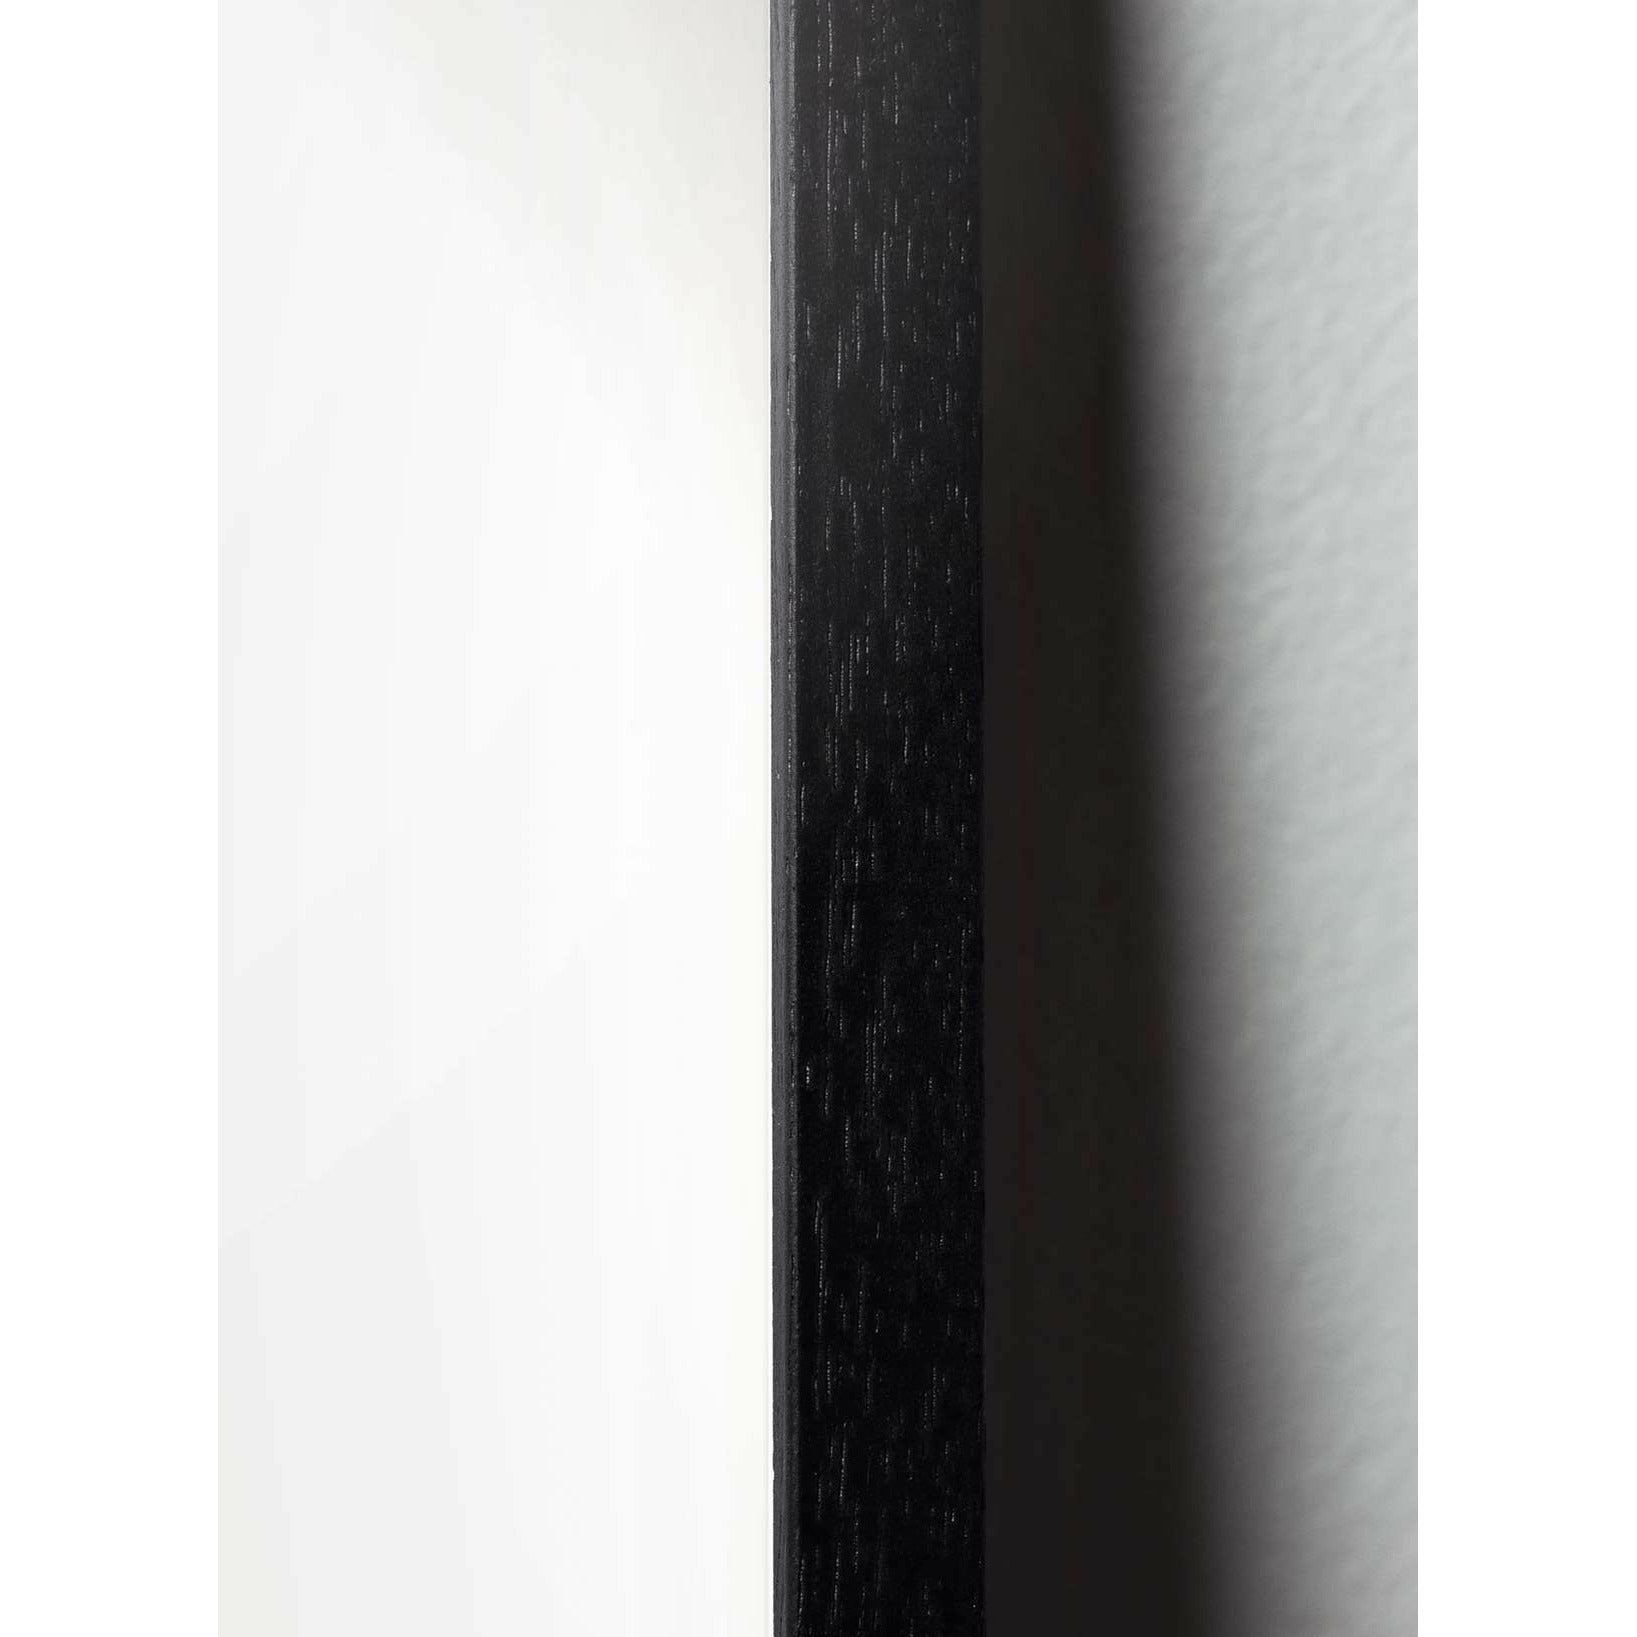 brainchild Pudota klassinen juliste, runko mustalla lakatulla puulla 30x40 cm, hiekkavärinen tausta